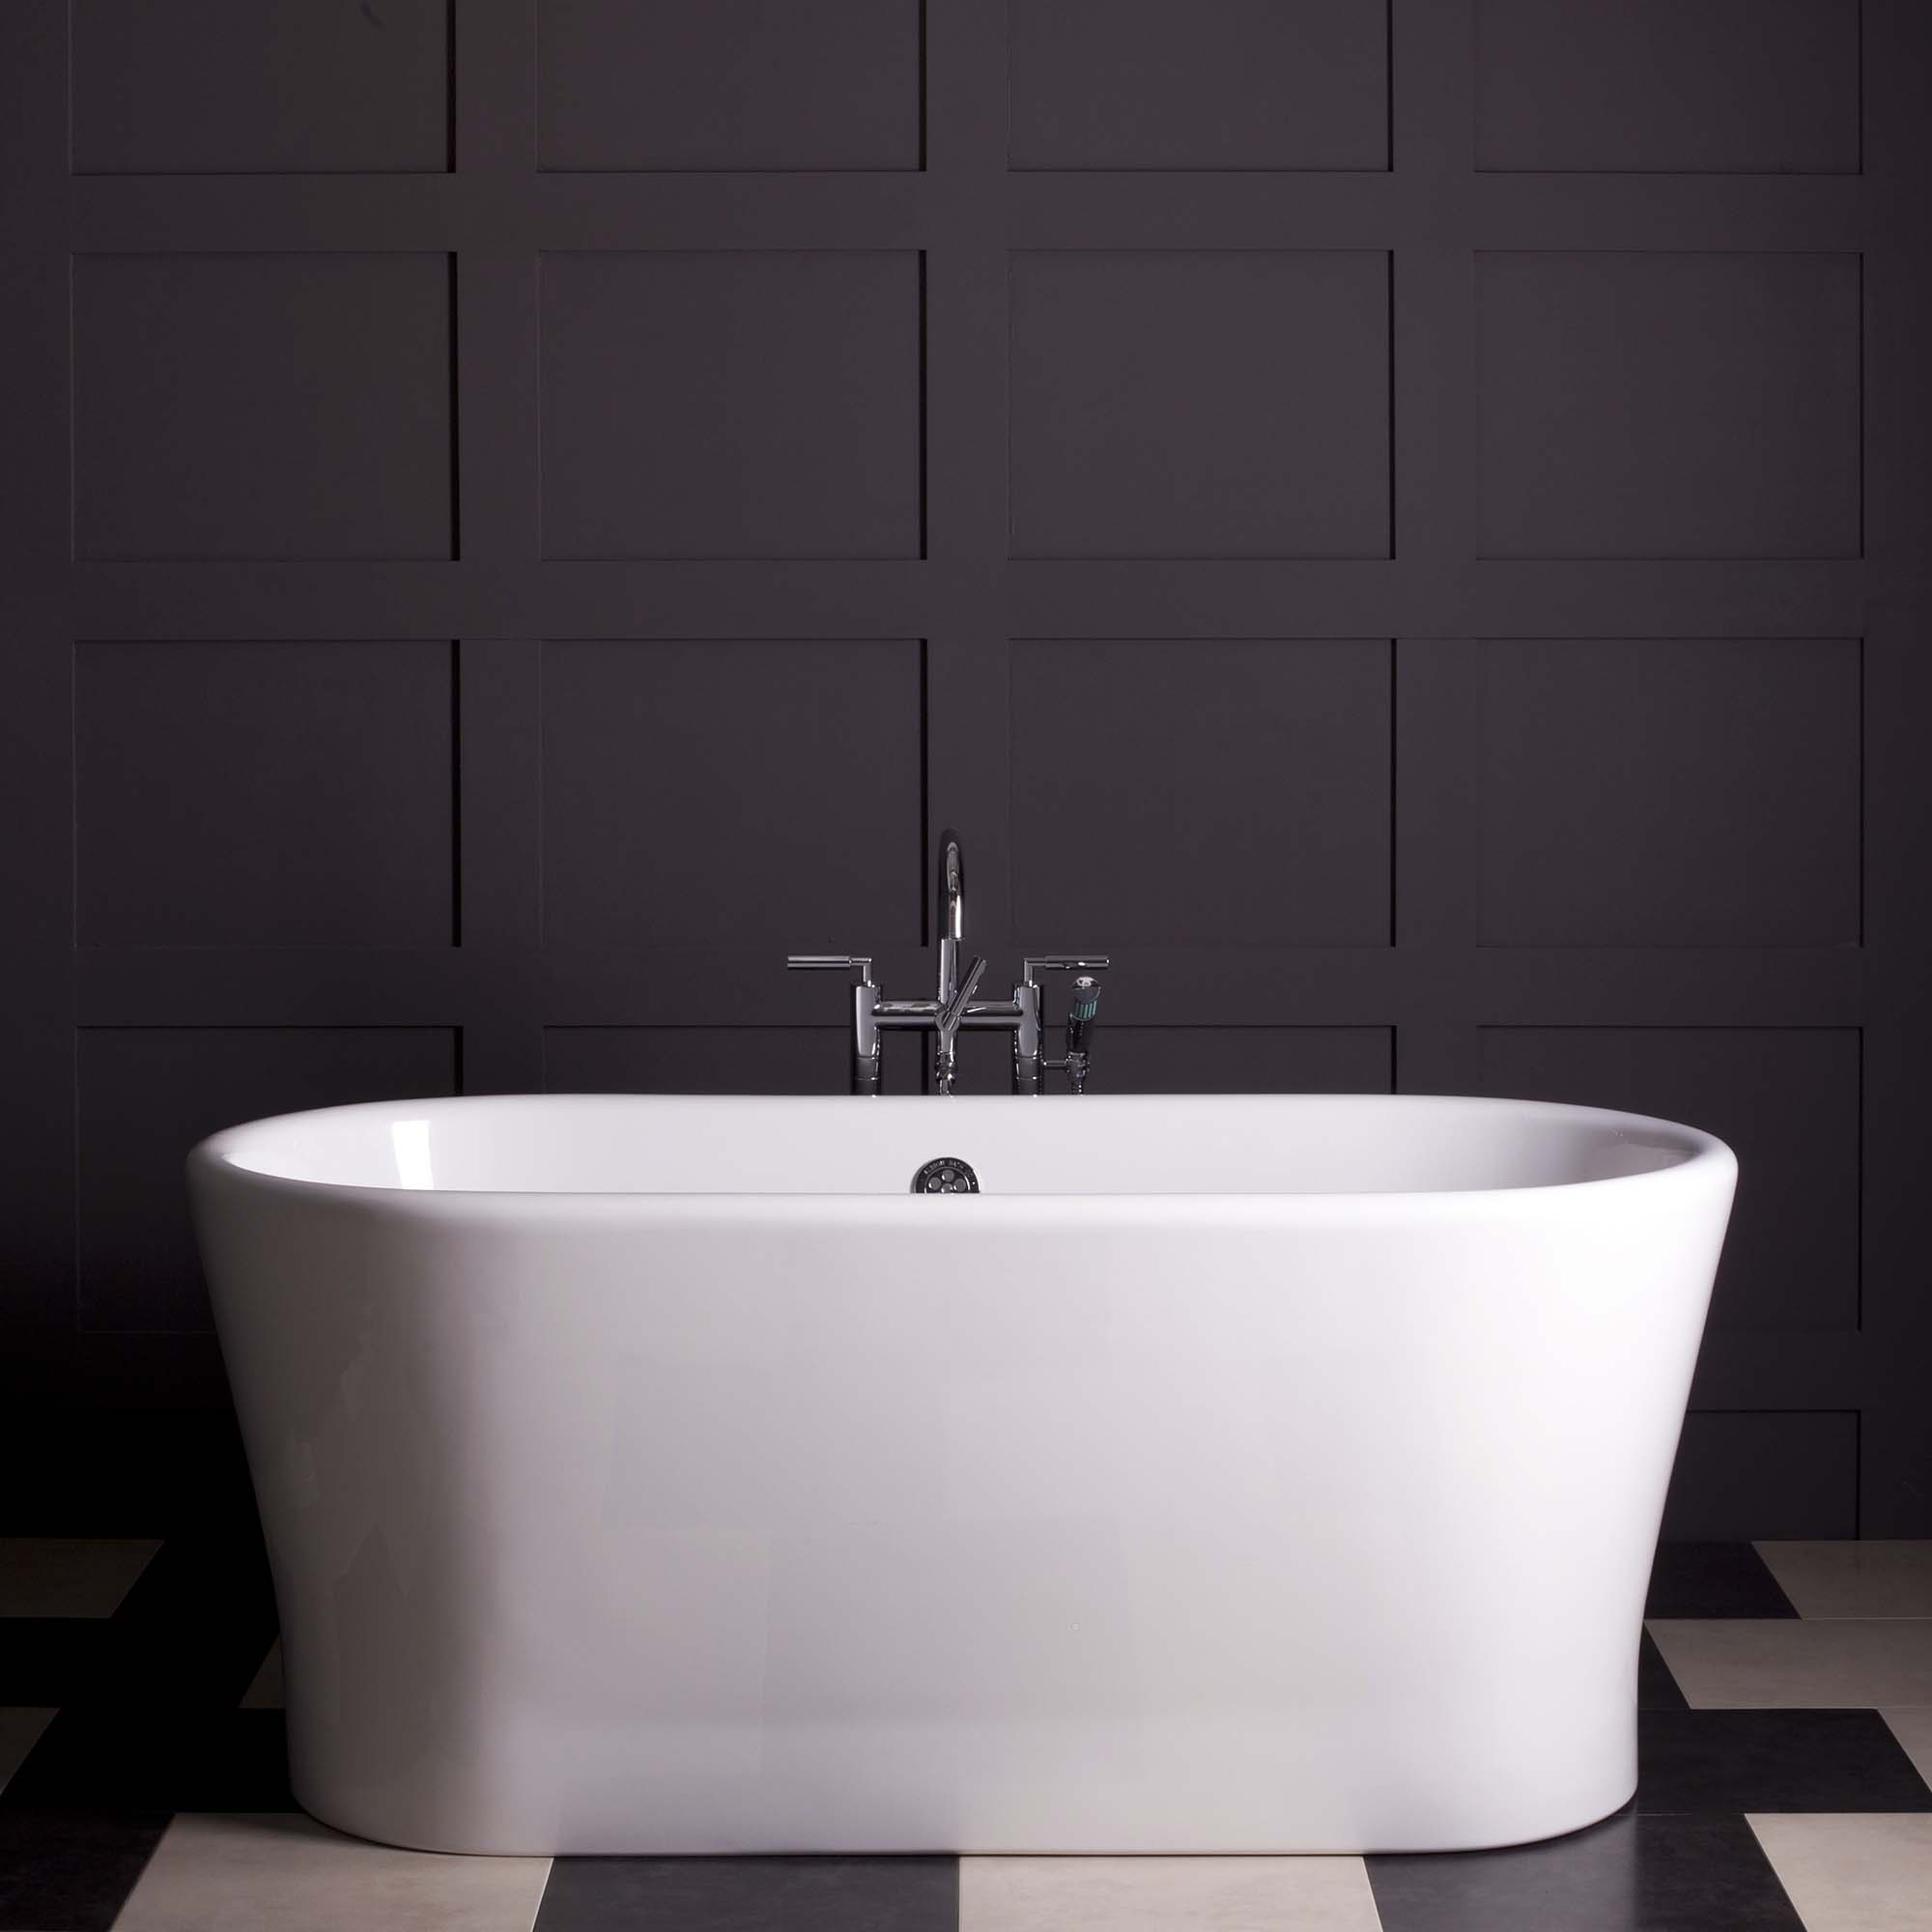 bathrooom wall paneling ideas dark gray box molding white free standing tub